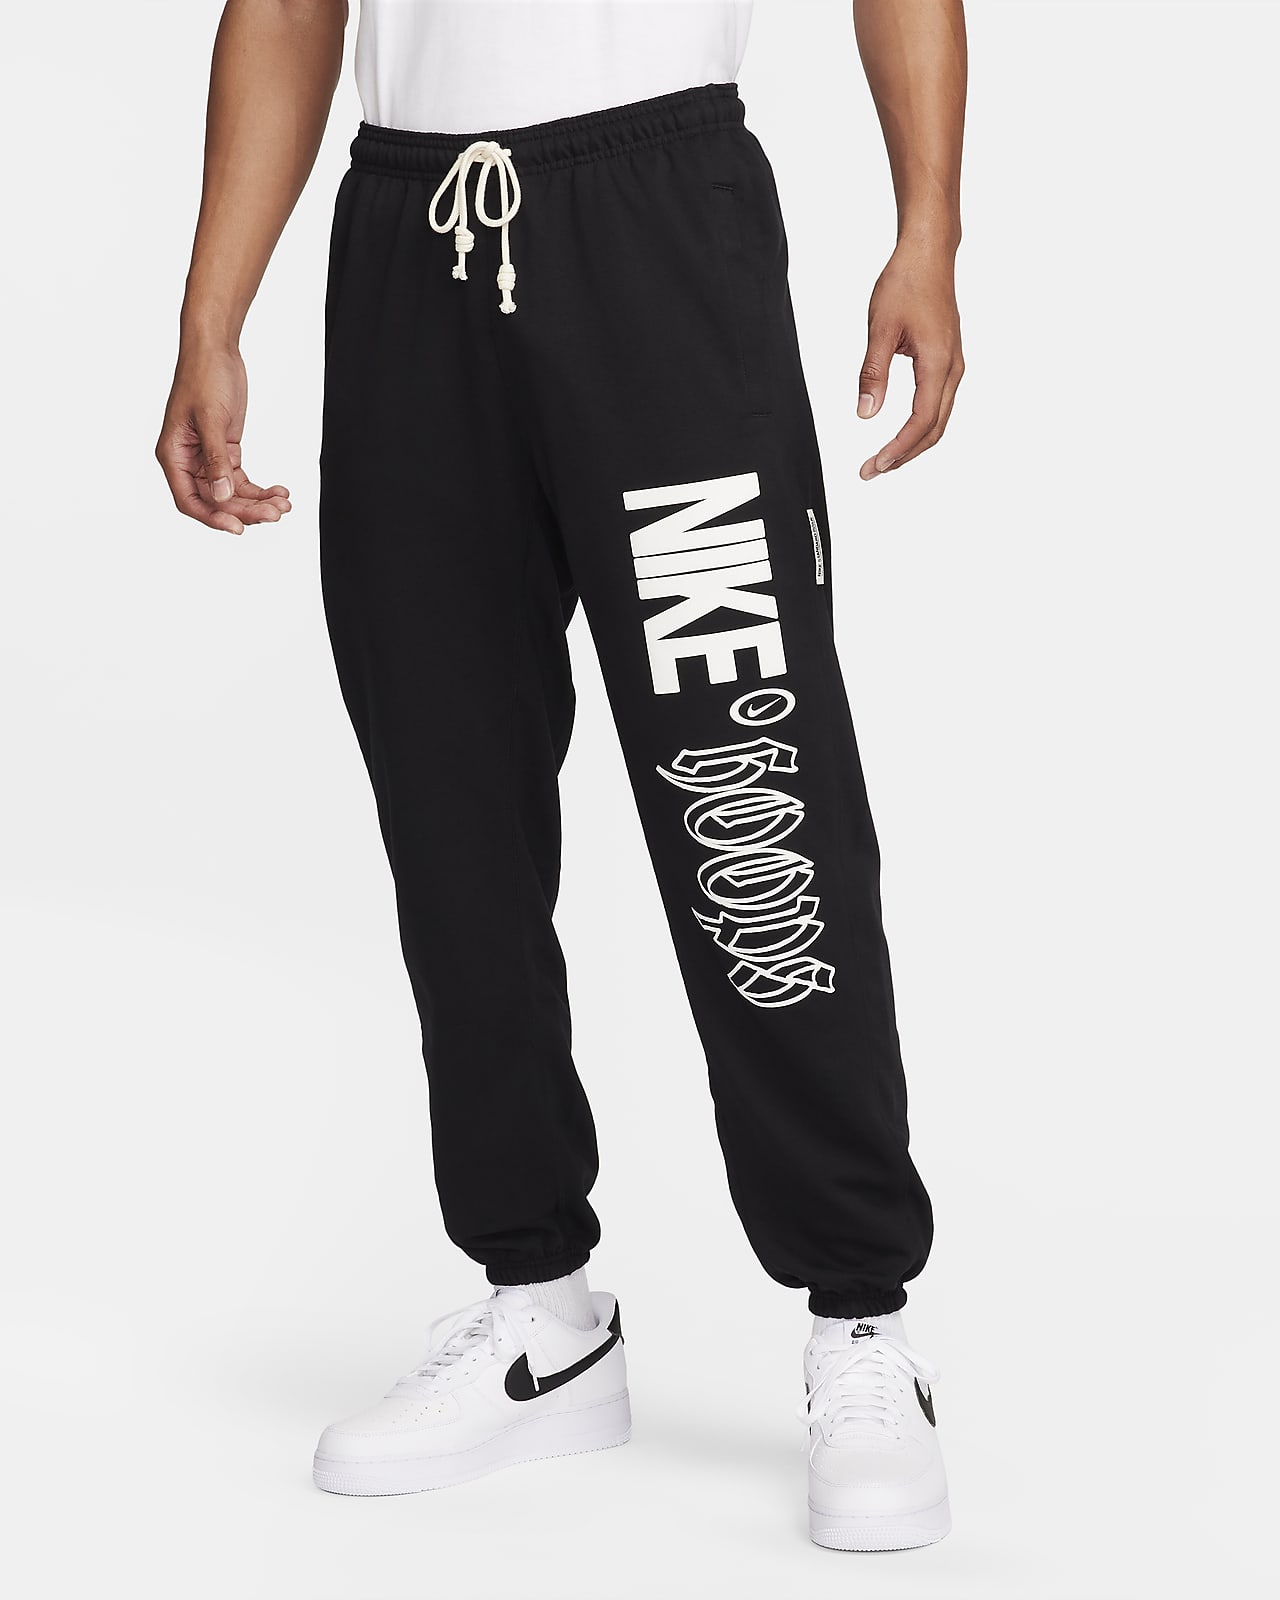 Pánské basketbalové kalhoty Nike Standard Issue Dri-FIT